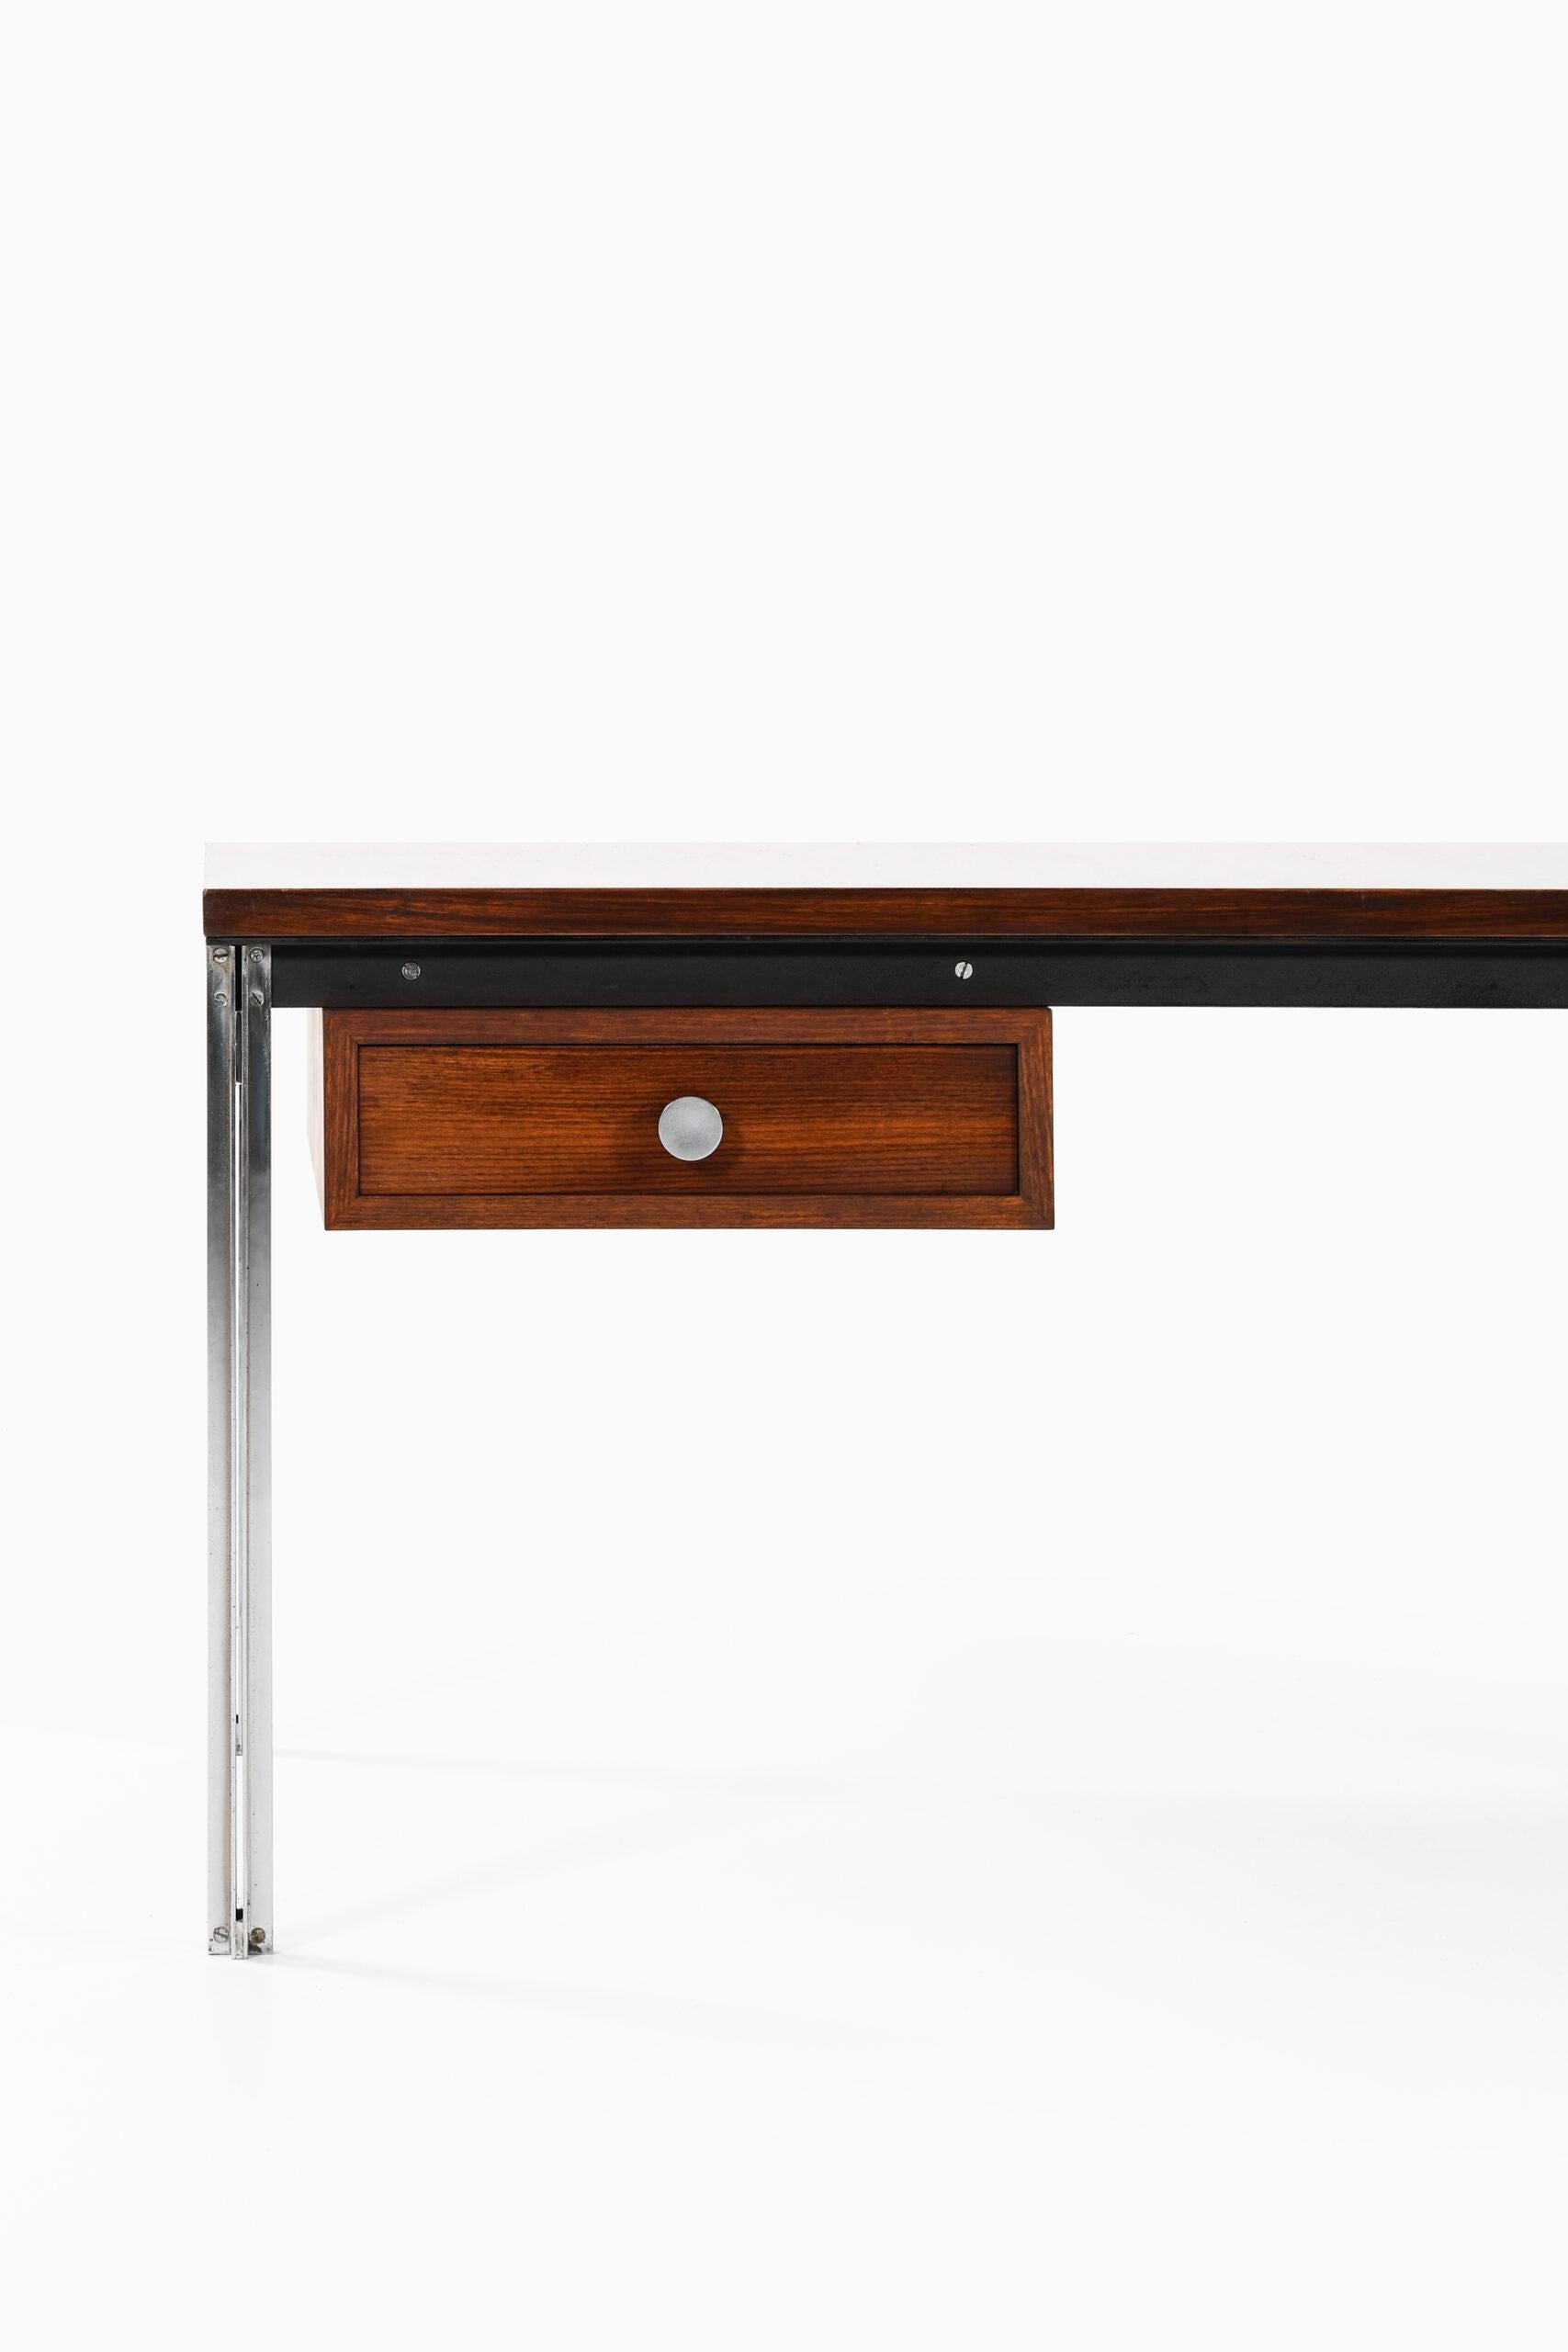 Seltener Schreibtisch von unbekanntem Designer. Wahrscheinlich in Schweden hergestellt.